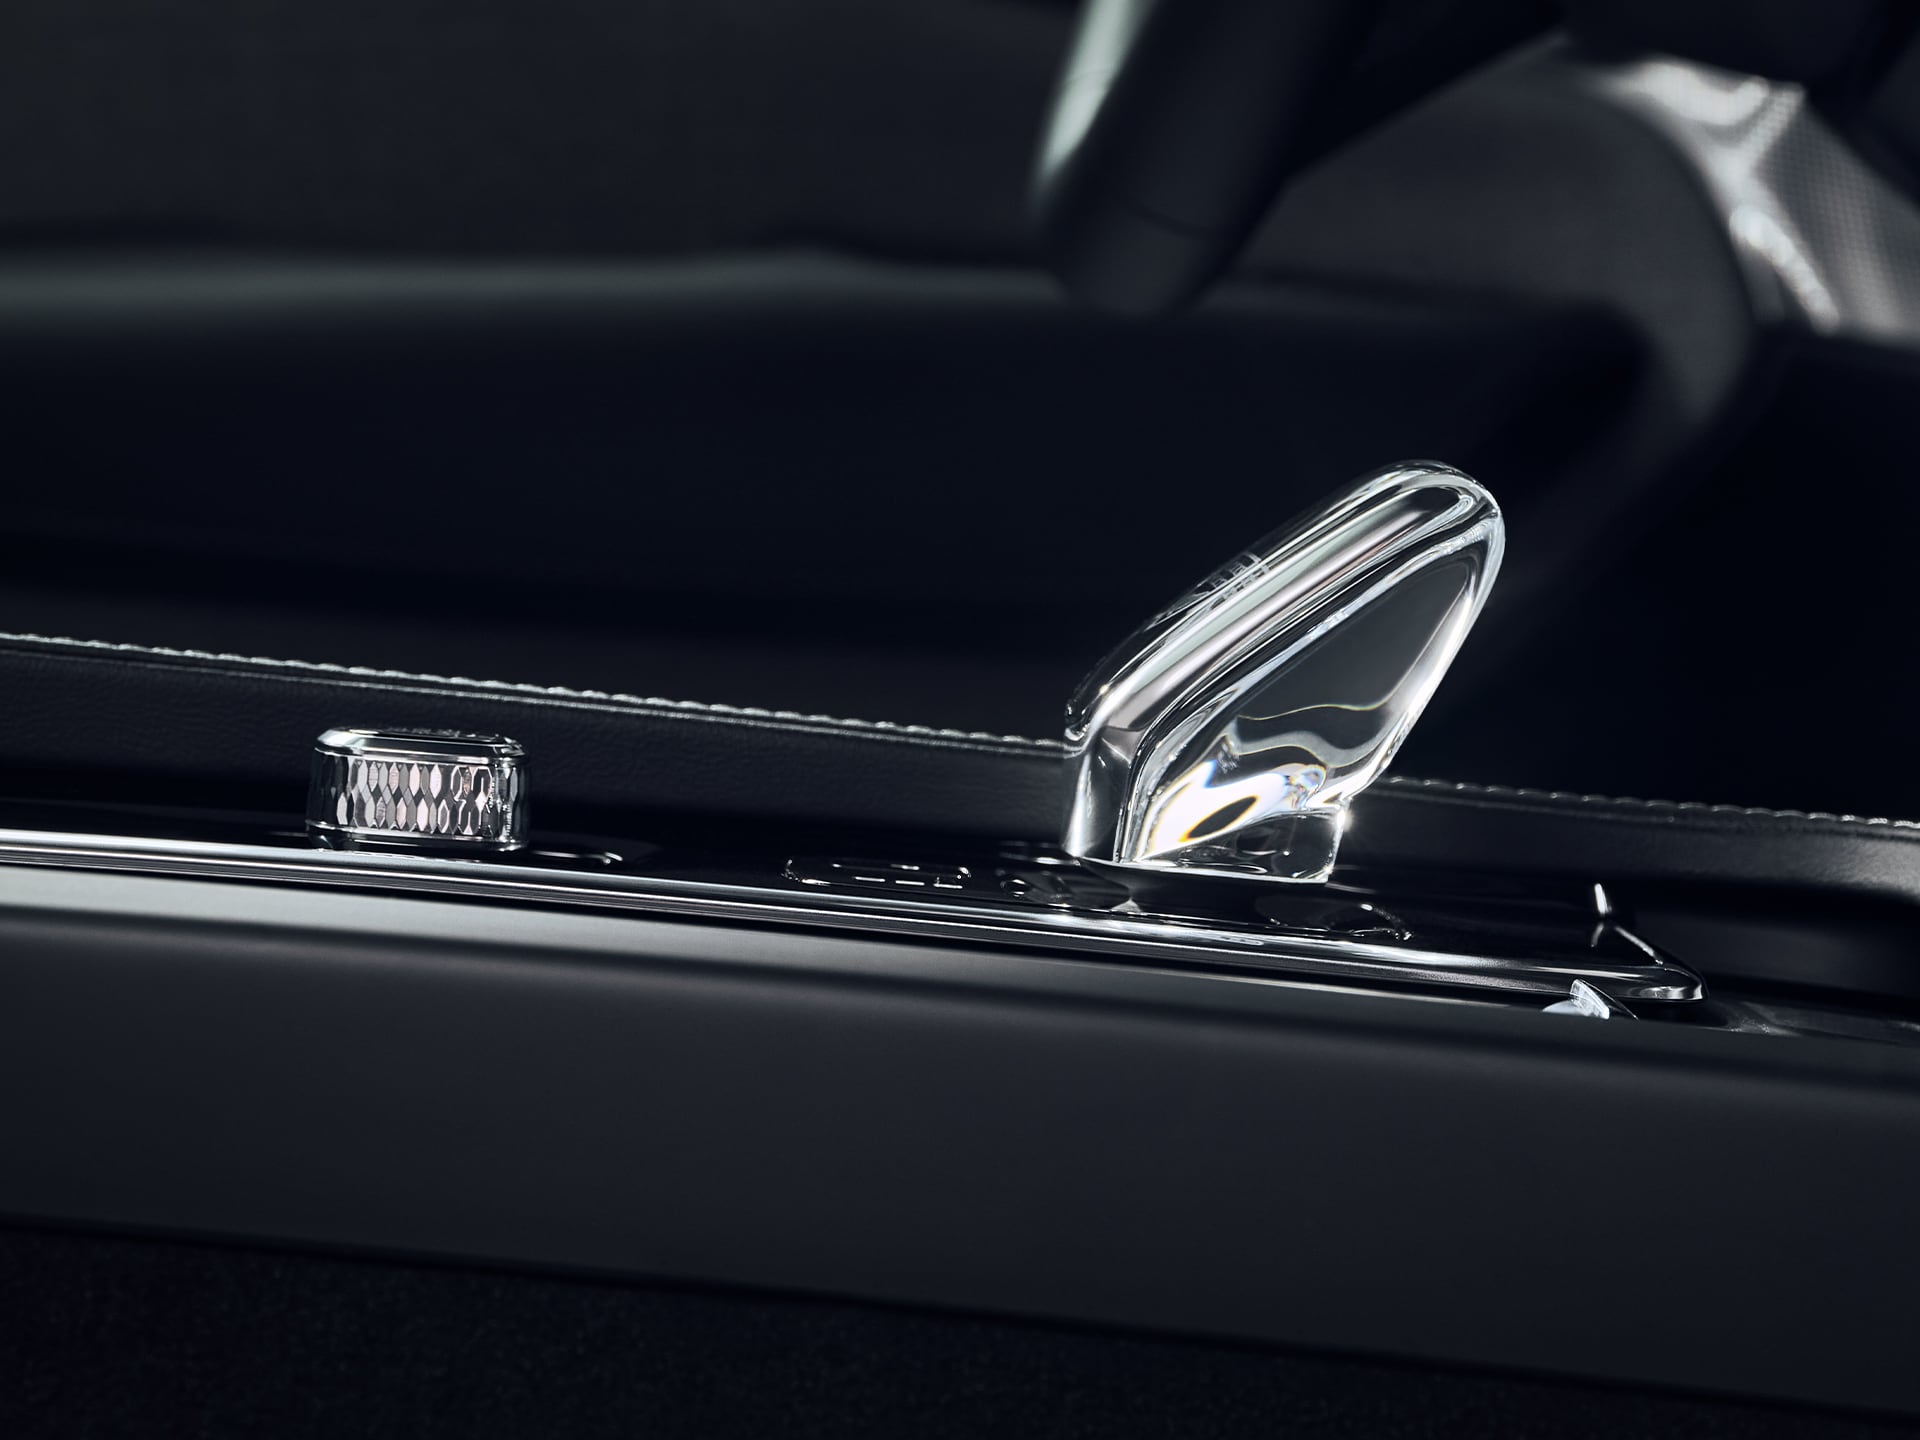 Levier de vitesse en véritable cristal suédois d'Orrefors dans la nouvelle Volvo XC90.